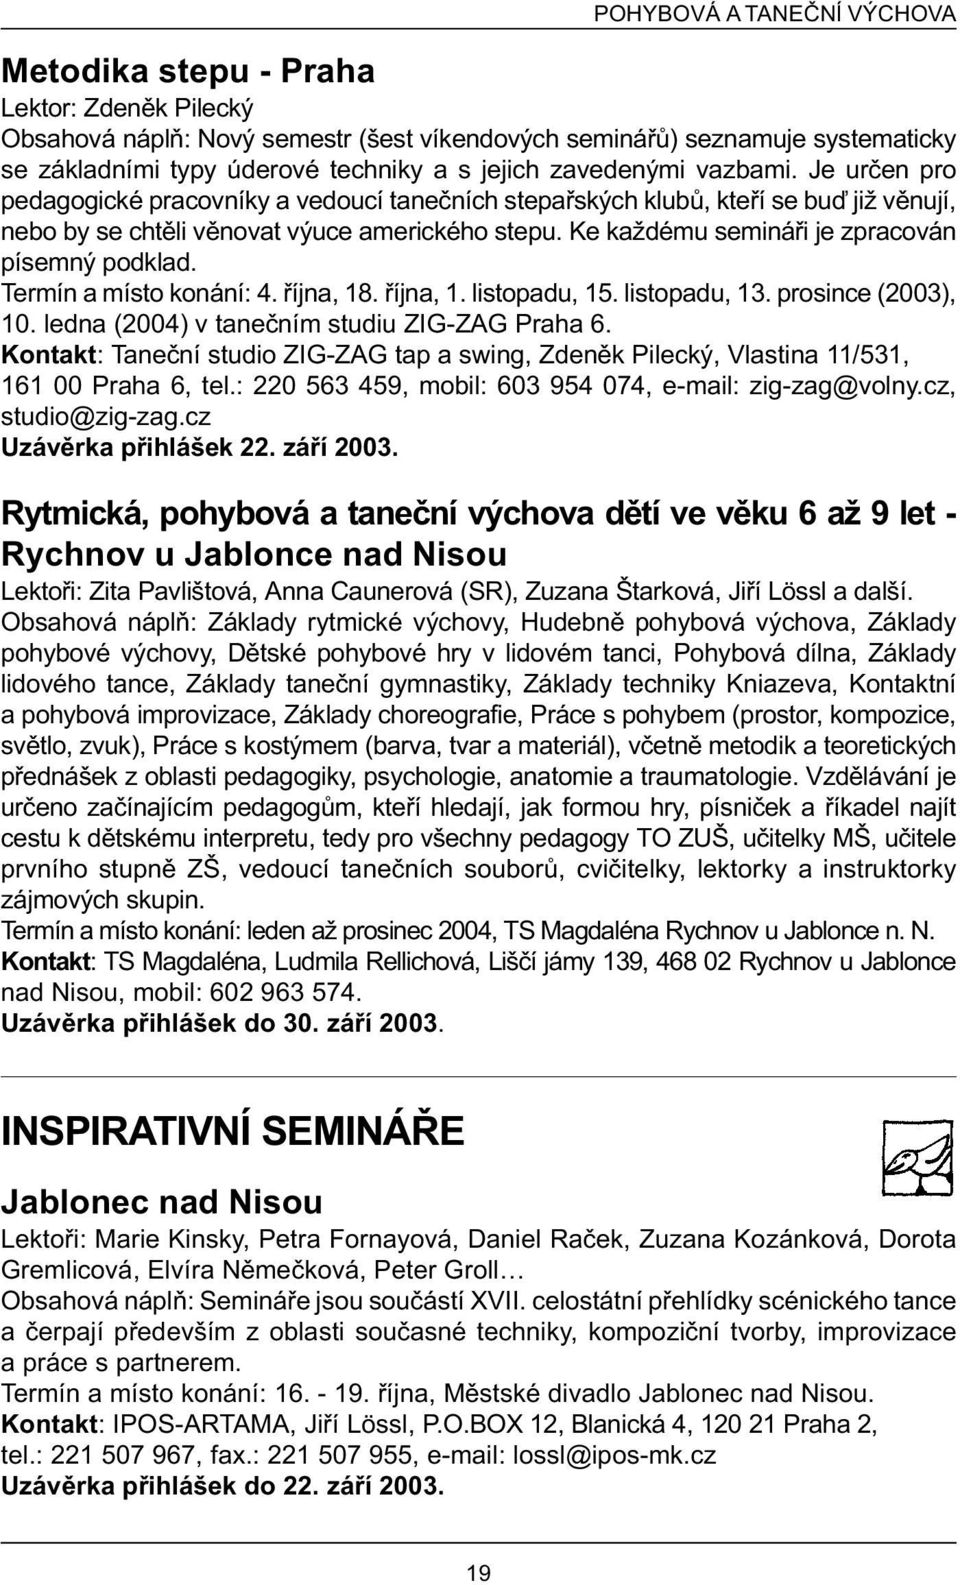 Ke každému semináøi je zpracován písemný podklad. Termín a místo konání: 4. øíjna, 18. øíjna, 1. listopadu, 15. listopadu, 13. prosince (2003), 10. ledna (2004) v taneèním studiu ZIG-ZAG Praha 6.